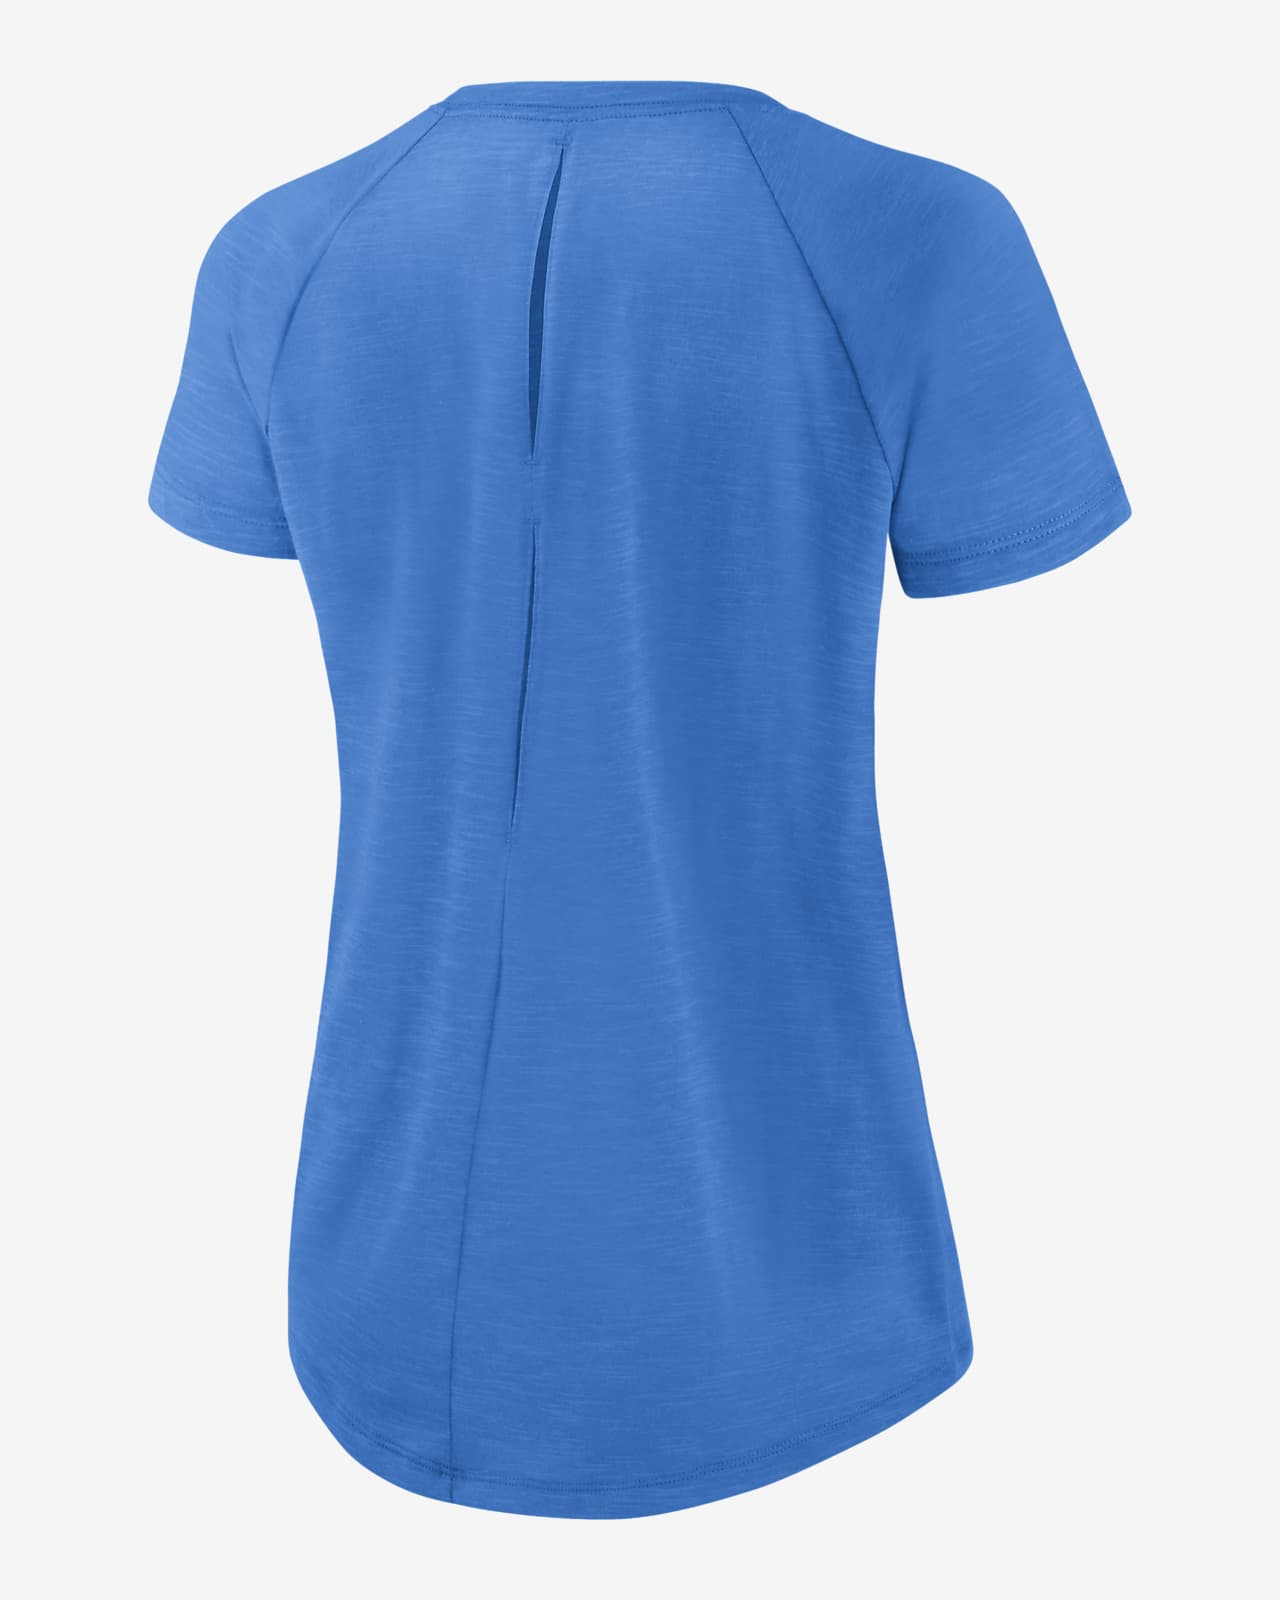 Nike Fashion (NFL Las Vegas Raiders) Women's 3/4-Sleeve T-Shirt.